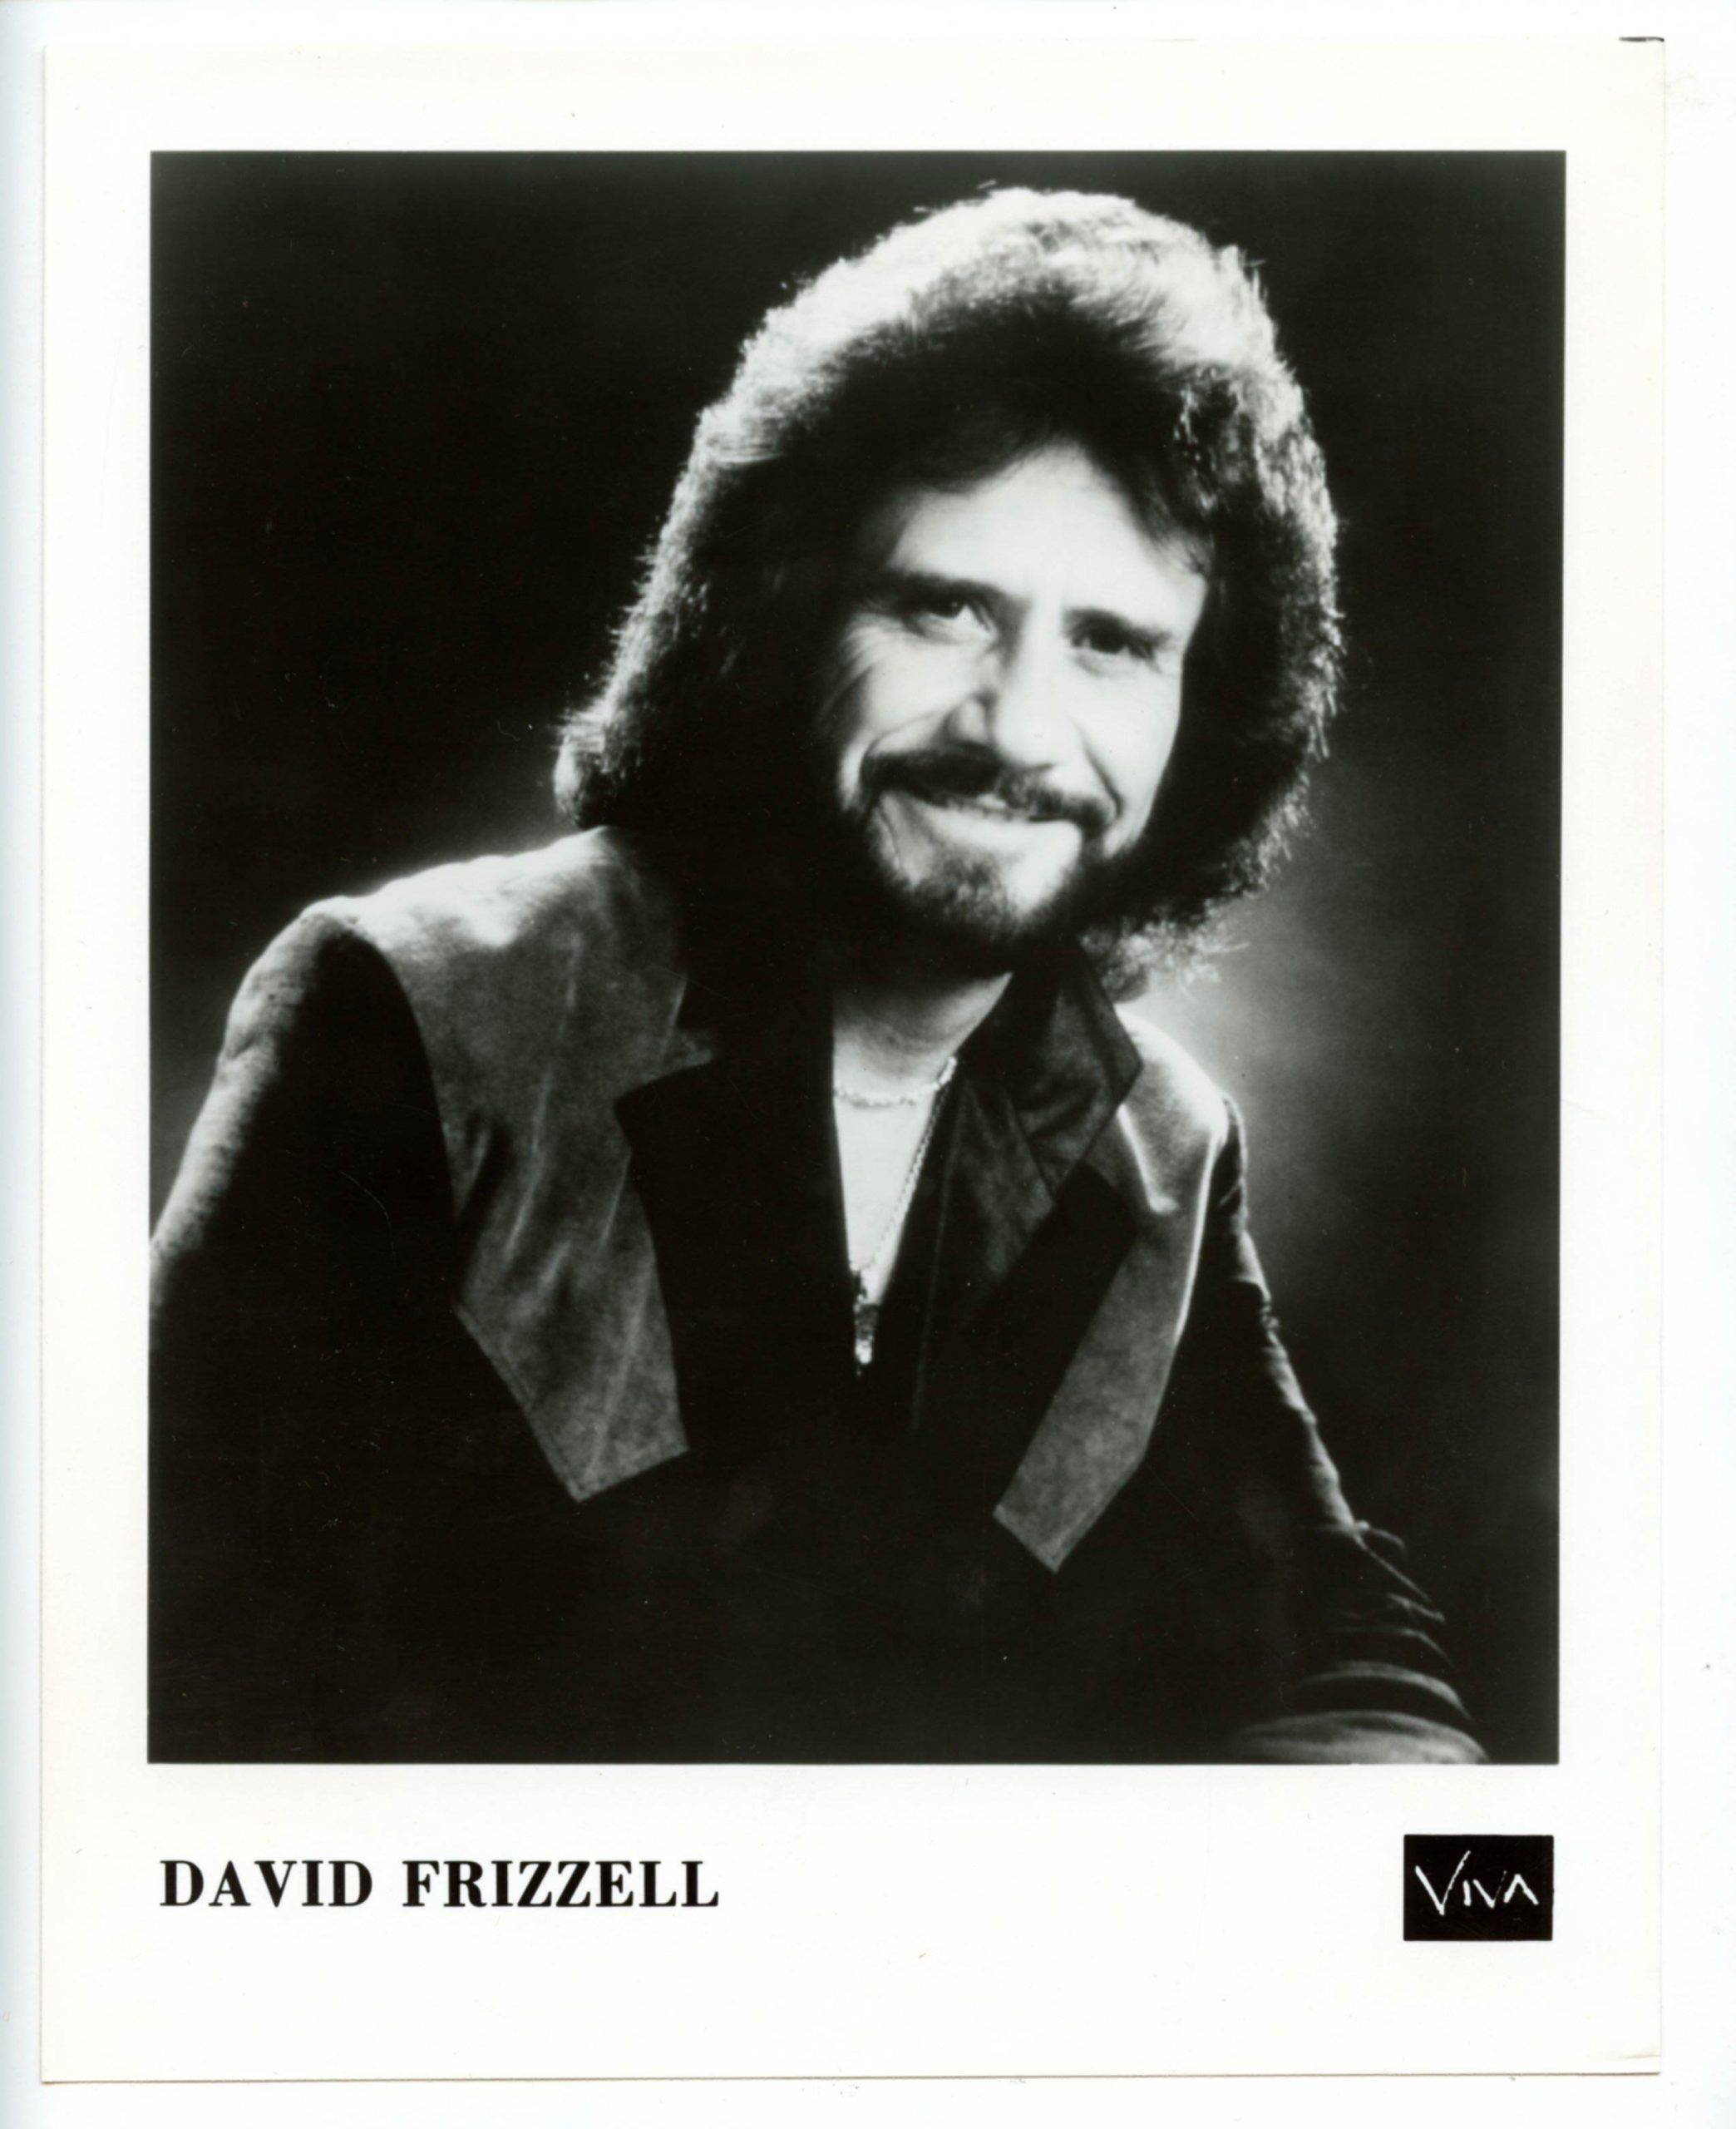 David Frizzell Photo 1980s Viva Records